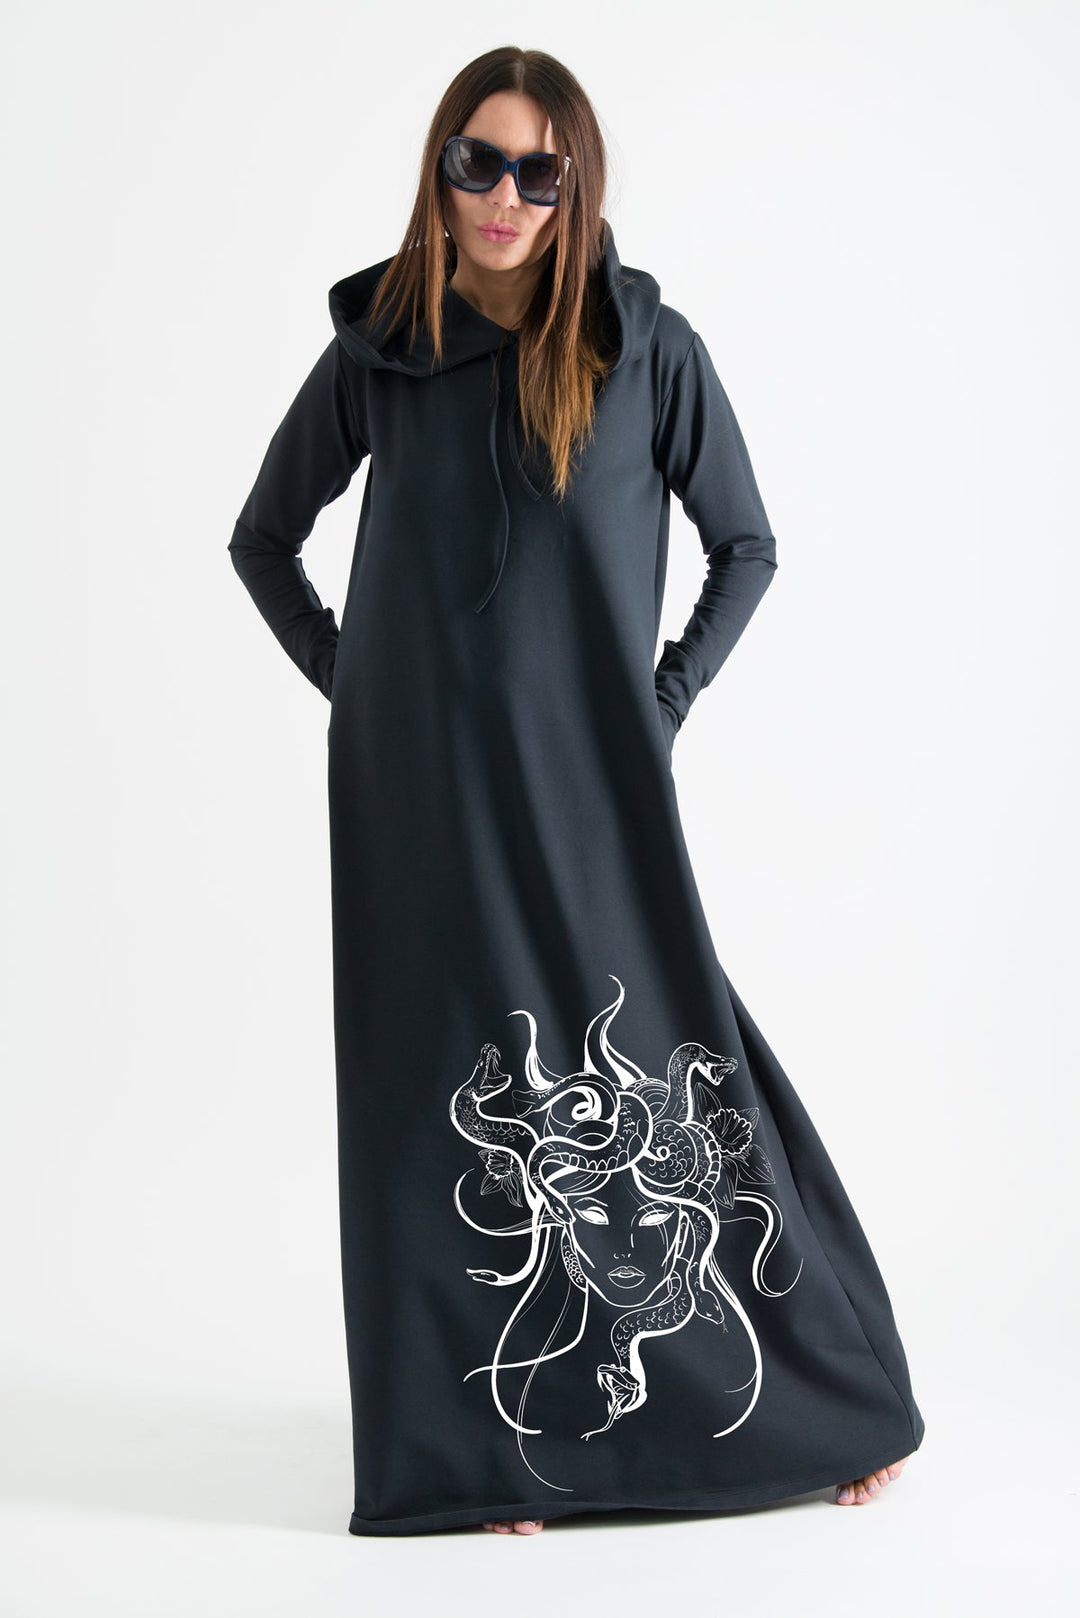 Black Hooded Octopus Printed Dress